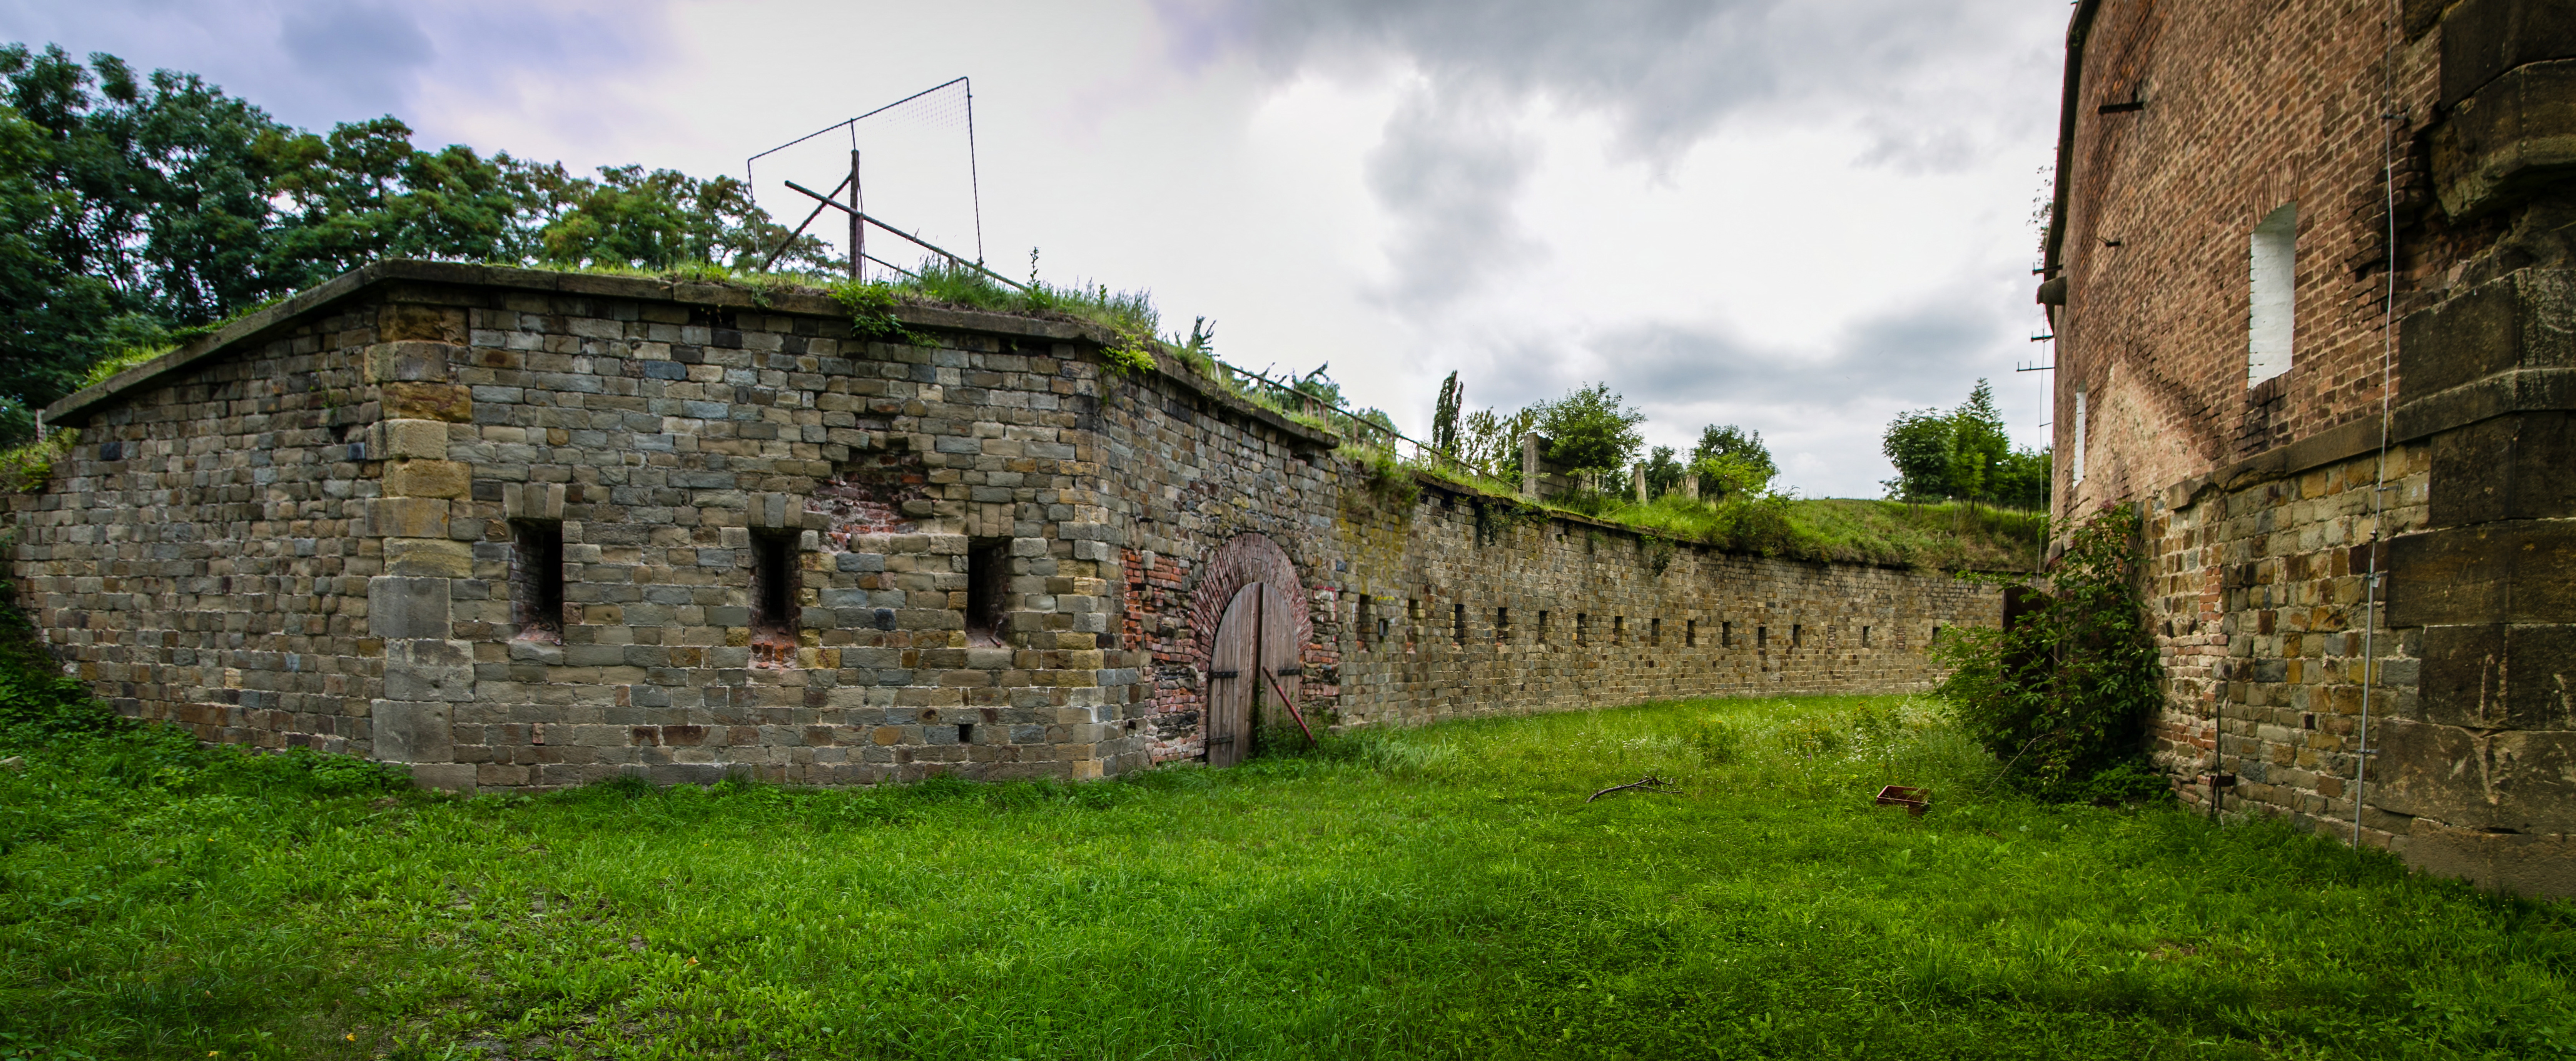 Czechy Olomouc Fort XXII 7